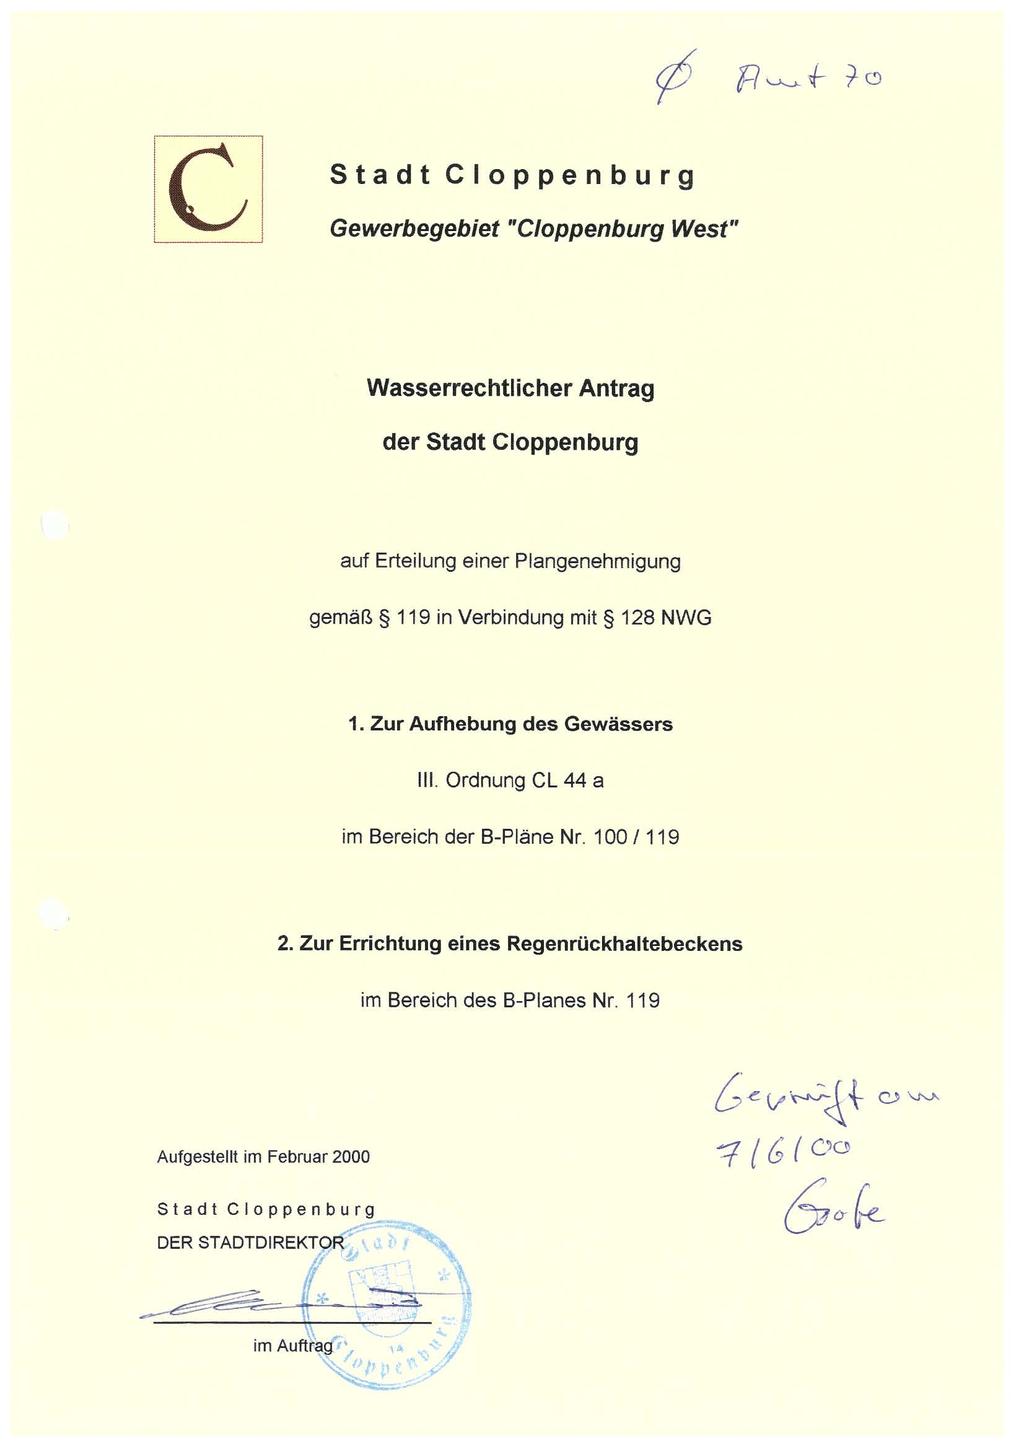 c Gewerbegebiet Stadt Cloppenburg "Cloppenburg West" Wasserrechtlicher Antrag der Stadt Cloppenburg auf Erteilung einer Plangenehmigung gemäß 9 in Verbindung mit NWG. Zur Aufhebung des Gewässers III.